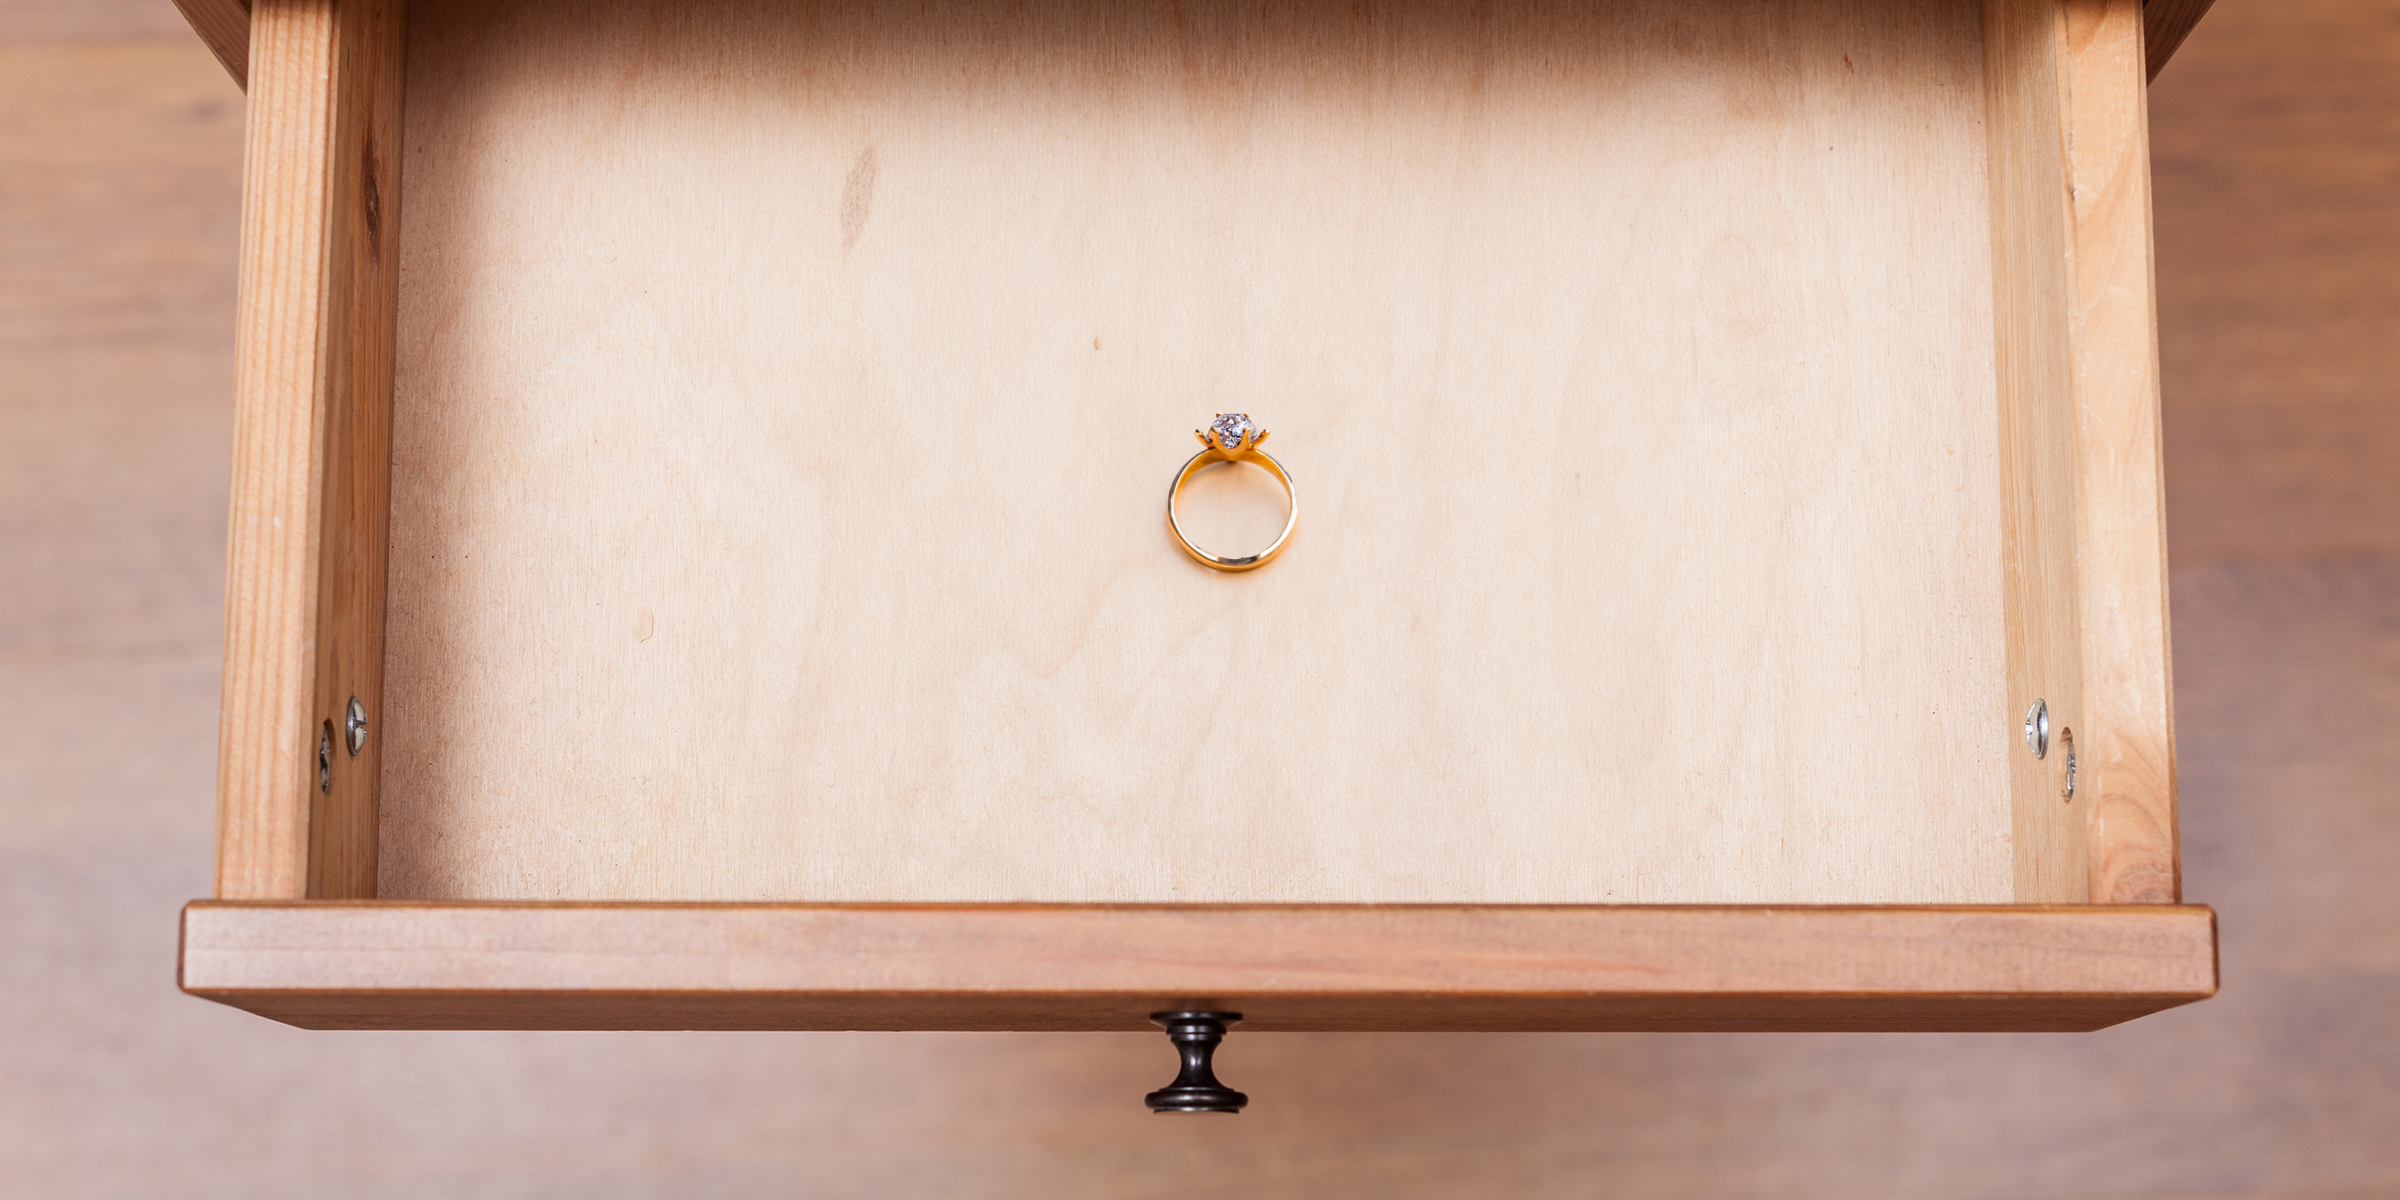 Une bague en diamant reposant dans un tiroir ouvert | Source : Shutterstock